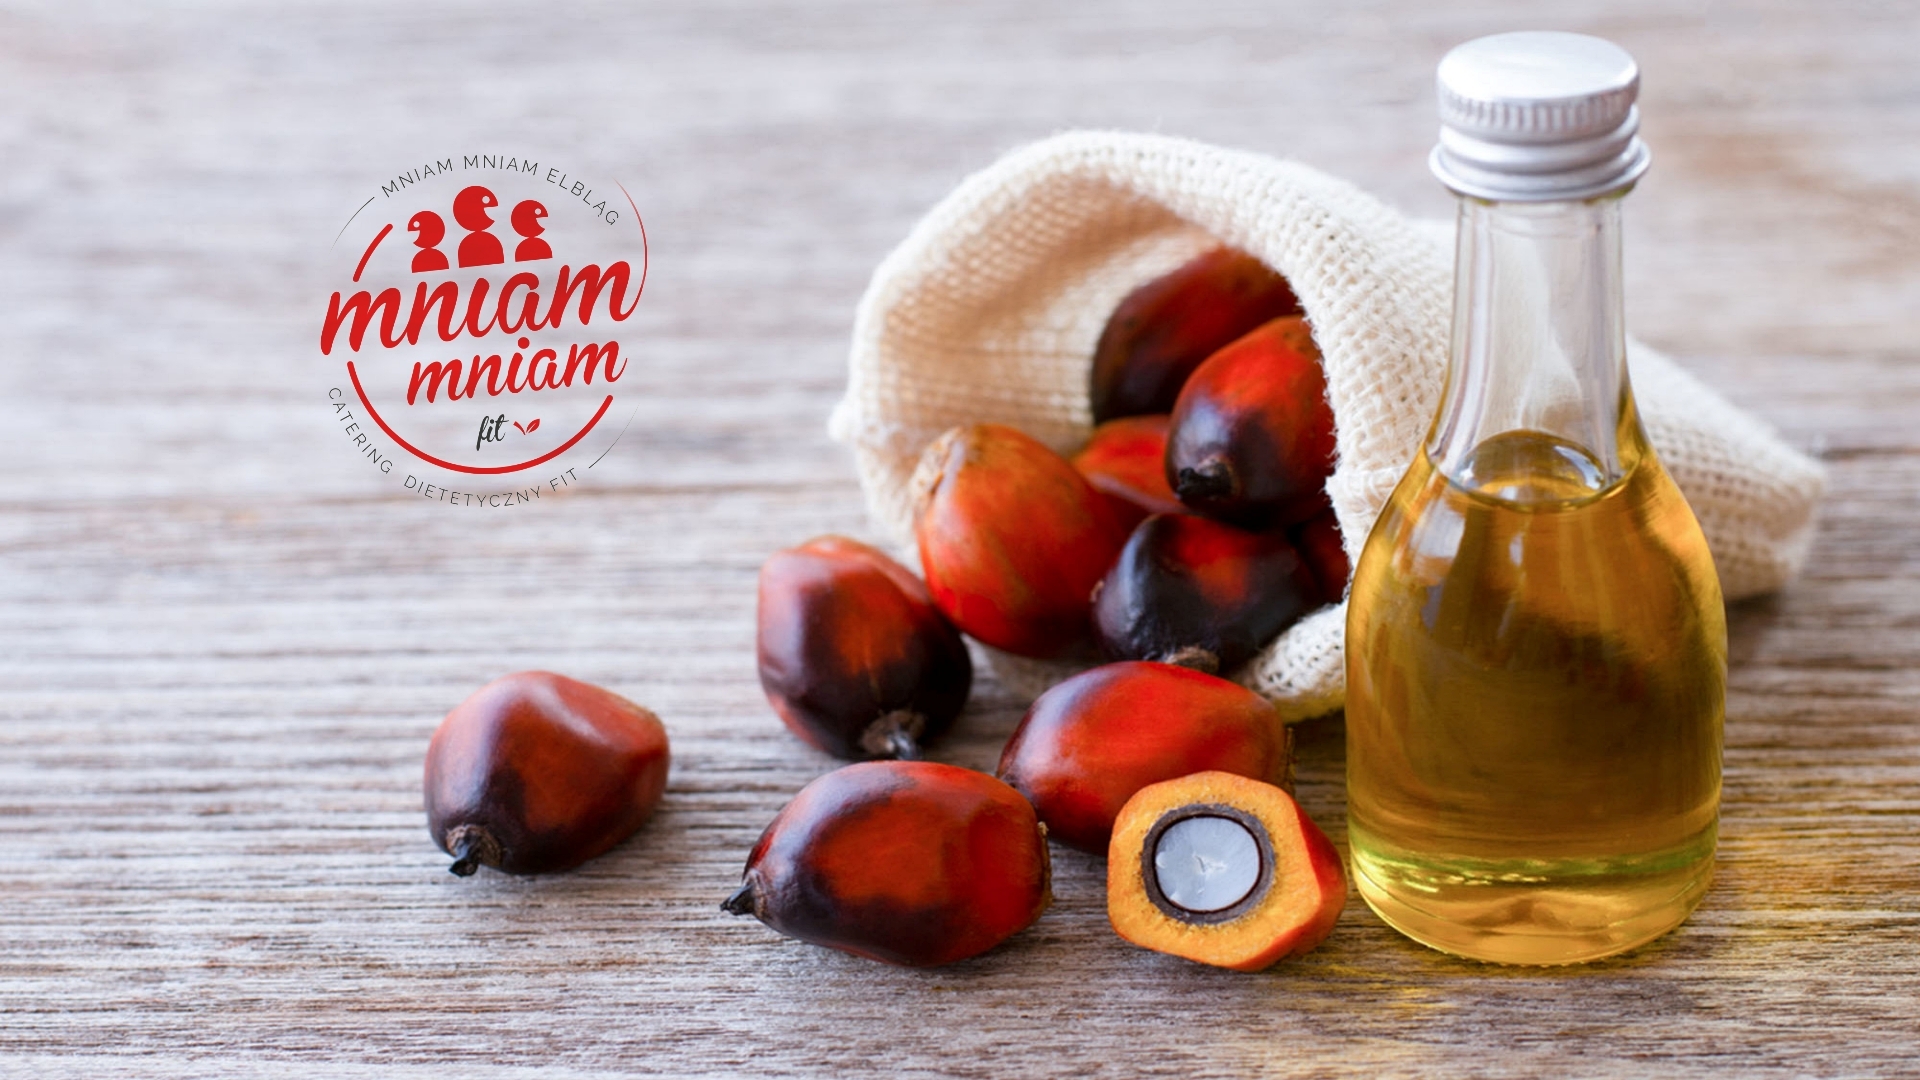 Usuń olej palmowy z listy zakupów… zrobisz przysługę światu i sobie